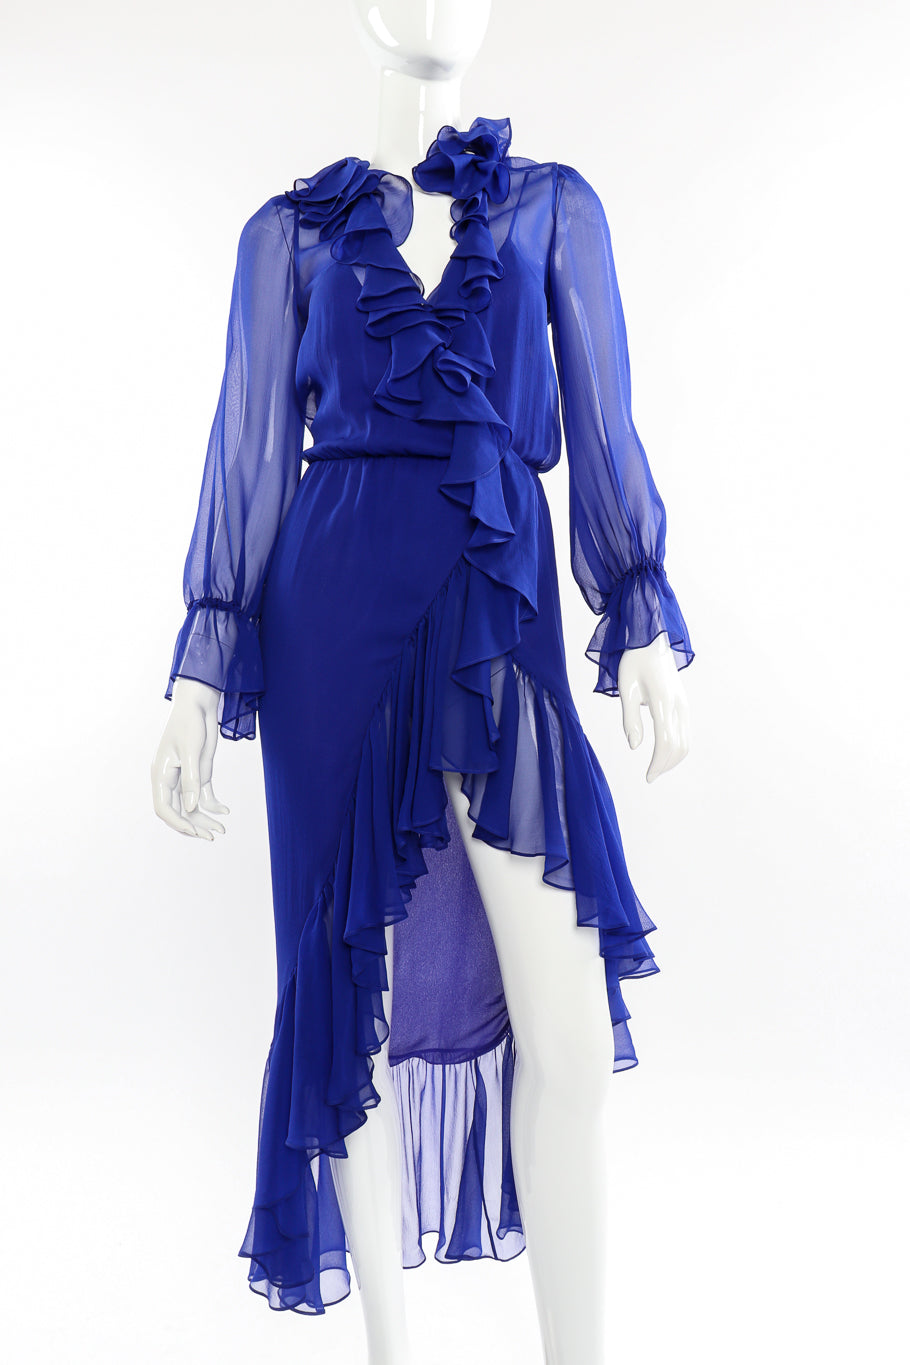 Saint Laurent 2020 Fall Sheer Silk Ruffle Dress front view on mannequin closeup @Recessla